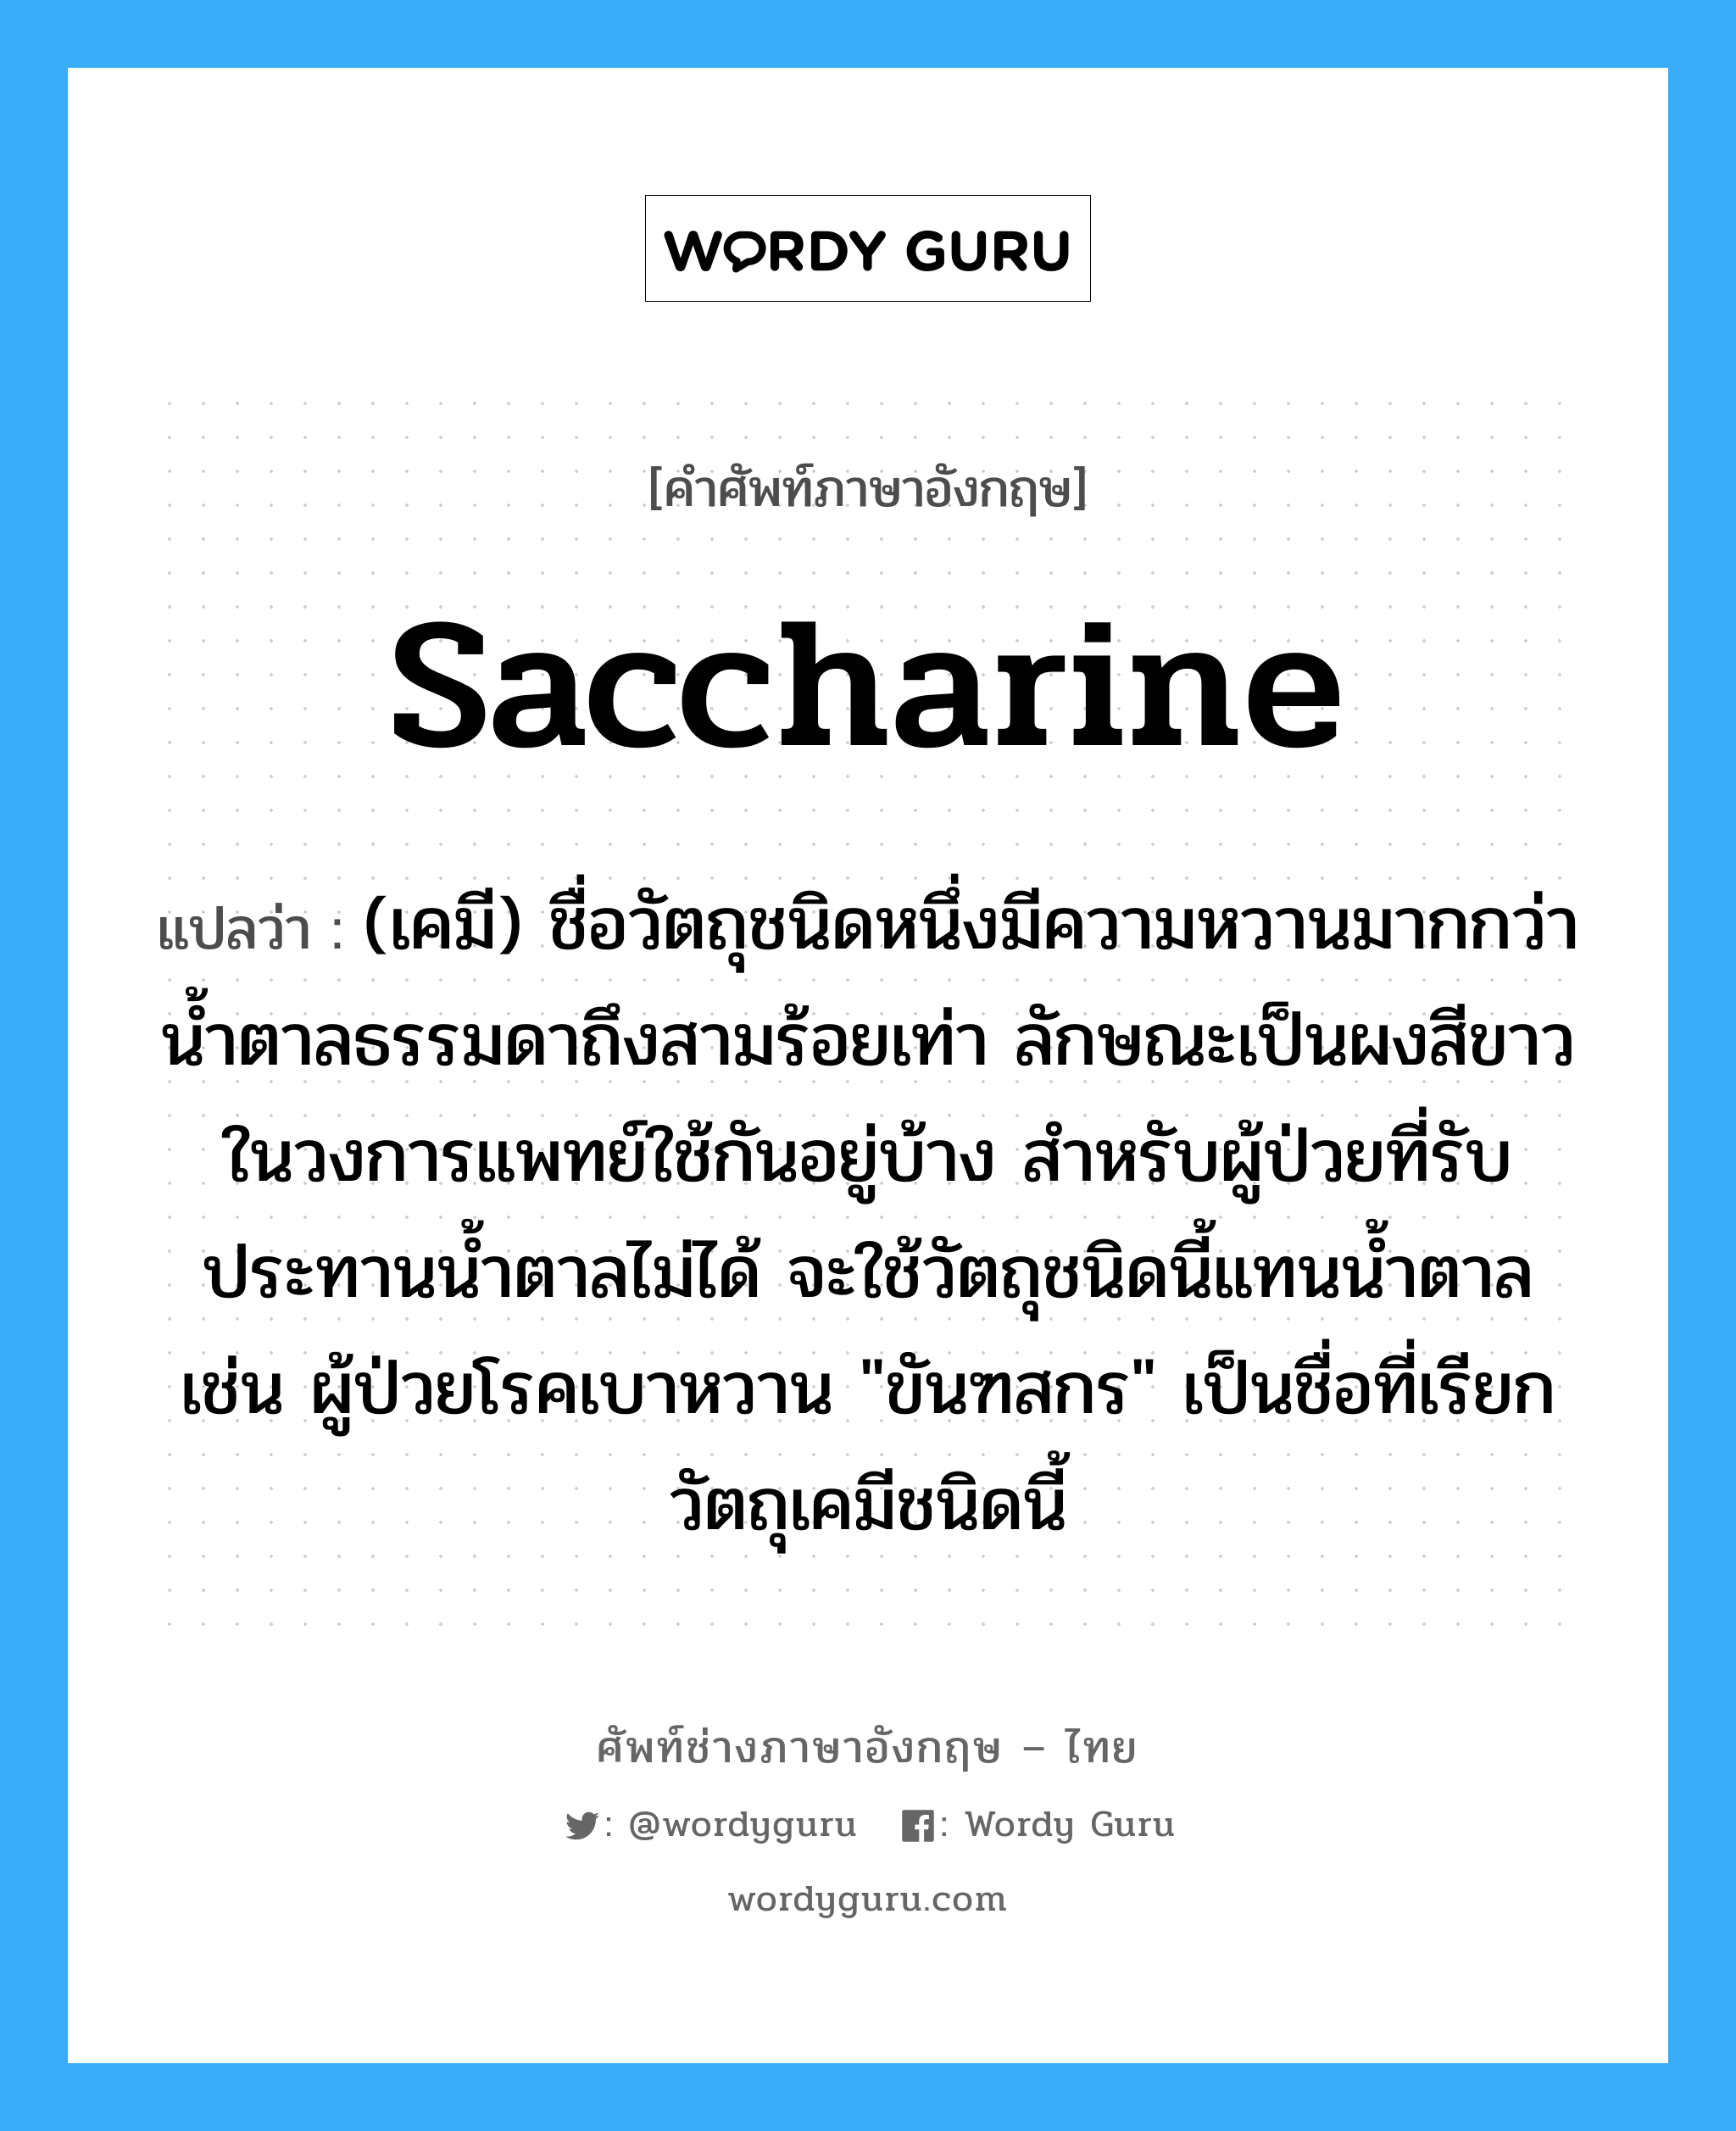 saccharine แปลว่า?, คำศัพท์ช่างภาษาอังกฤษ - ไทย saccharine คำศัพท์ภาษาอังกฤษ saccharine แปลว่า (เคมี) ชื่อวัตถุชนิดหนึ่งมีความหวานมากกว่าน้ำตาลธรรมดาถึงสามร้อยเท่า ลักษณะเป็นผงสีขาว ในวงการแพทย์ใช้กันอยู่บ้าง สำหรับผู้ป่วยที่รับประทานน้ำตาลไม่ได้ จะใช้วัตถุชนิดนี้แทนน้ำตาล เช่น ผู้ป่วยโรคเบาหวาน "ขันฑสกร" เป็นชื่อที่เรียกวัตถุเคมีชนิดนี้